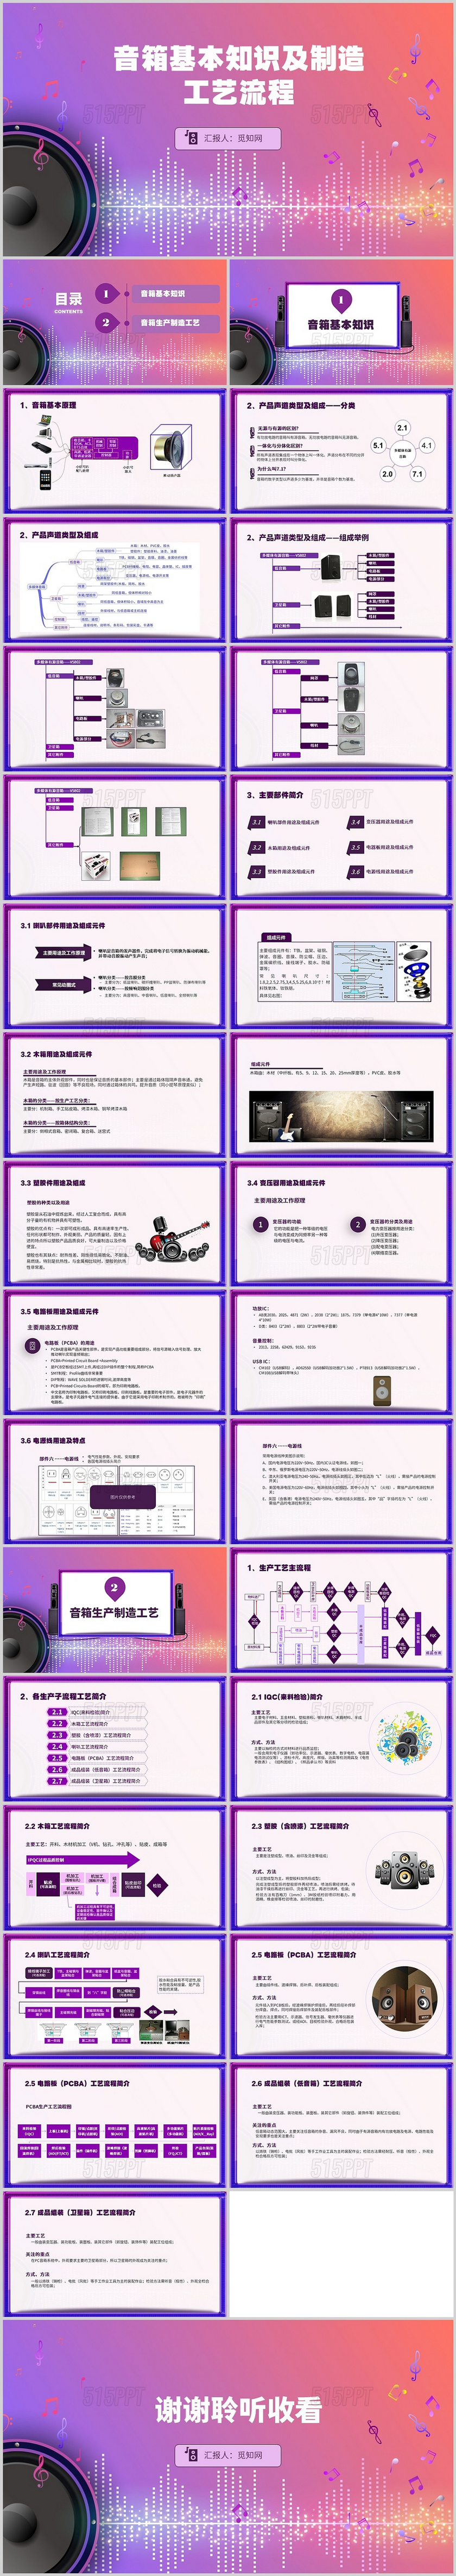 紫色简约音箱基本知识及制造工艺流程培训PPT